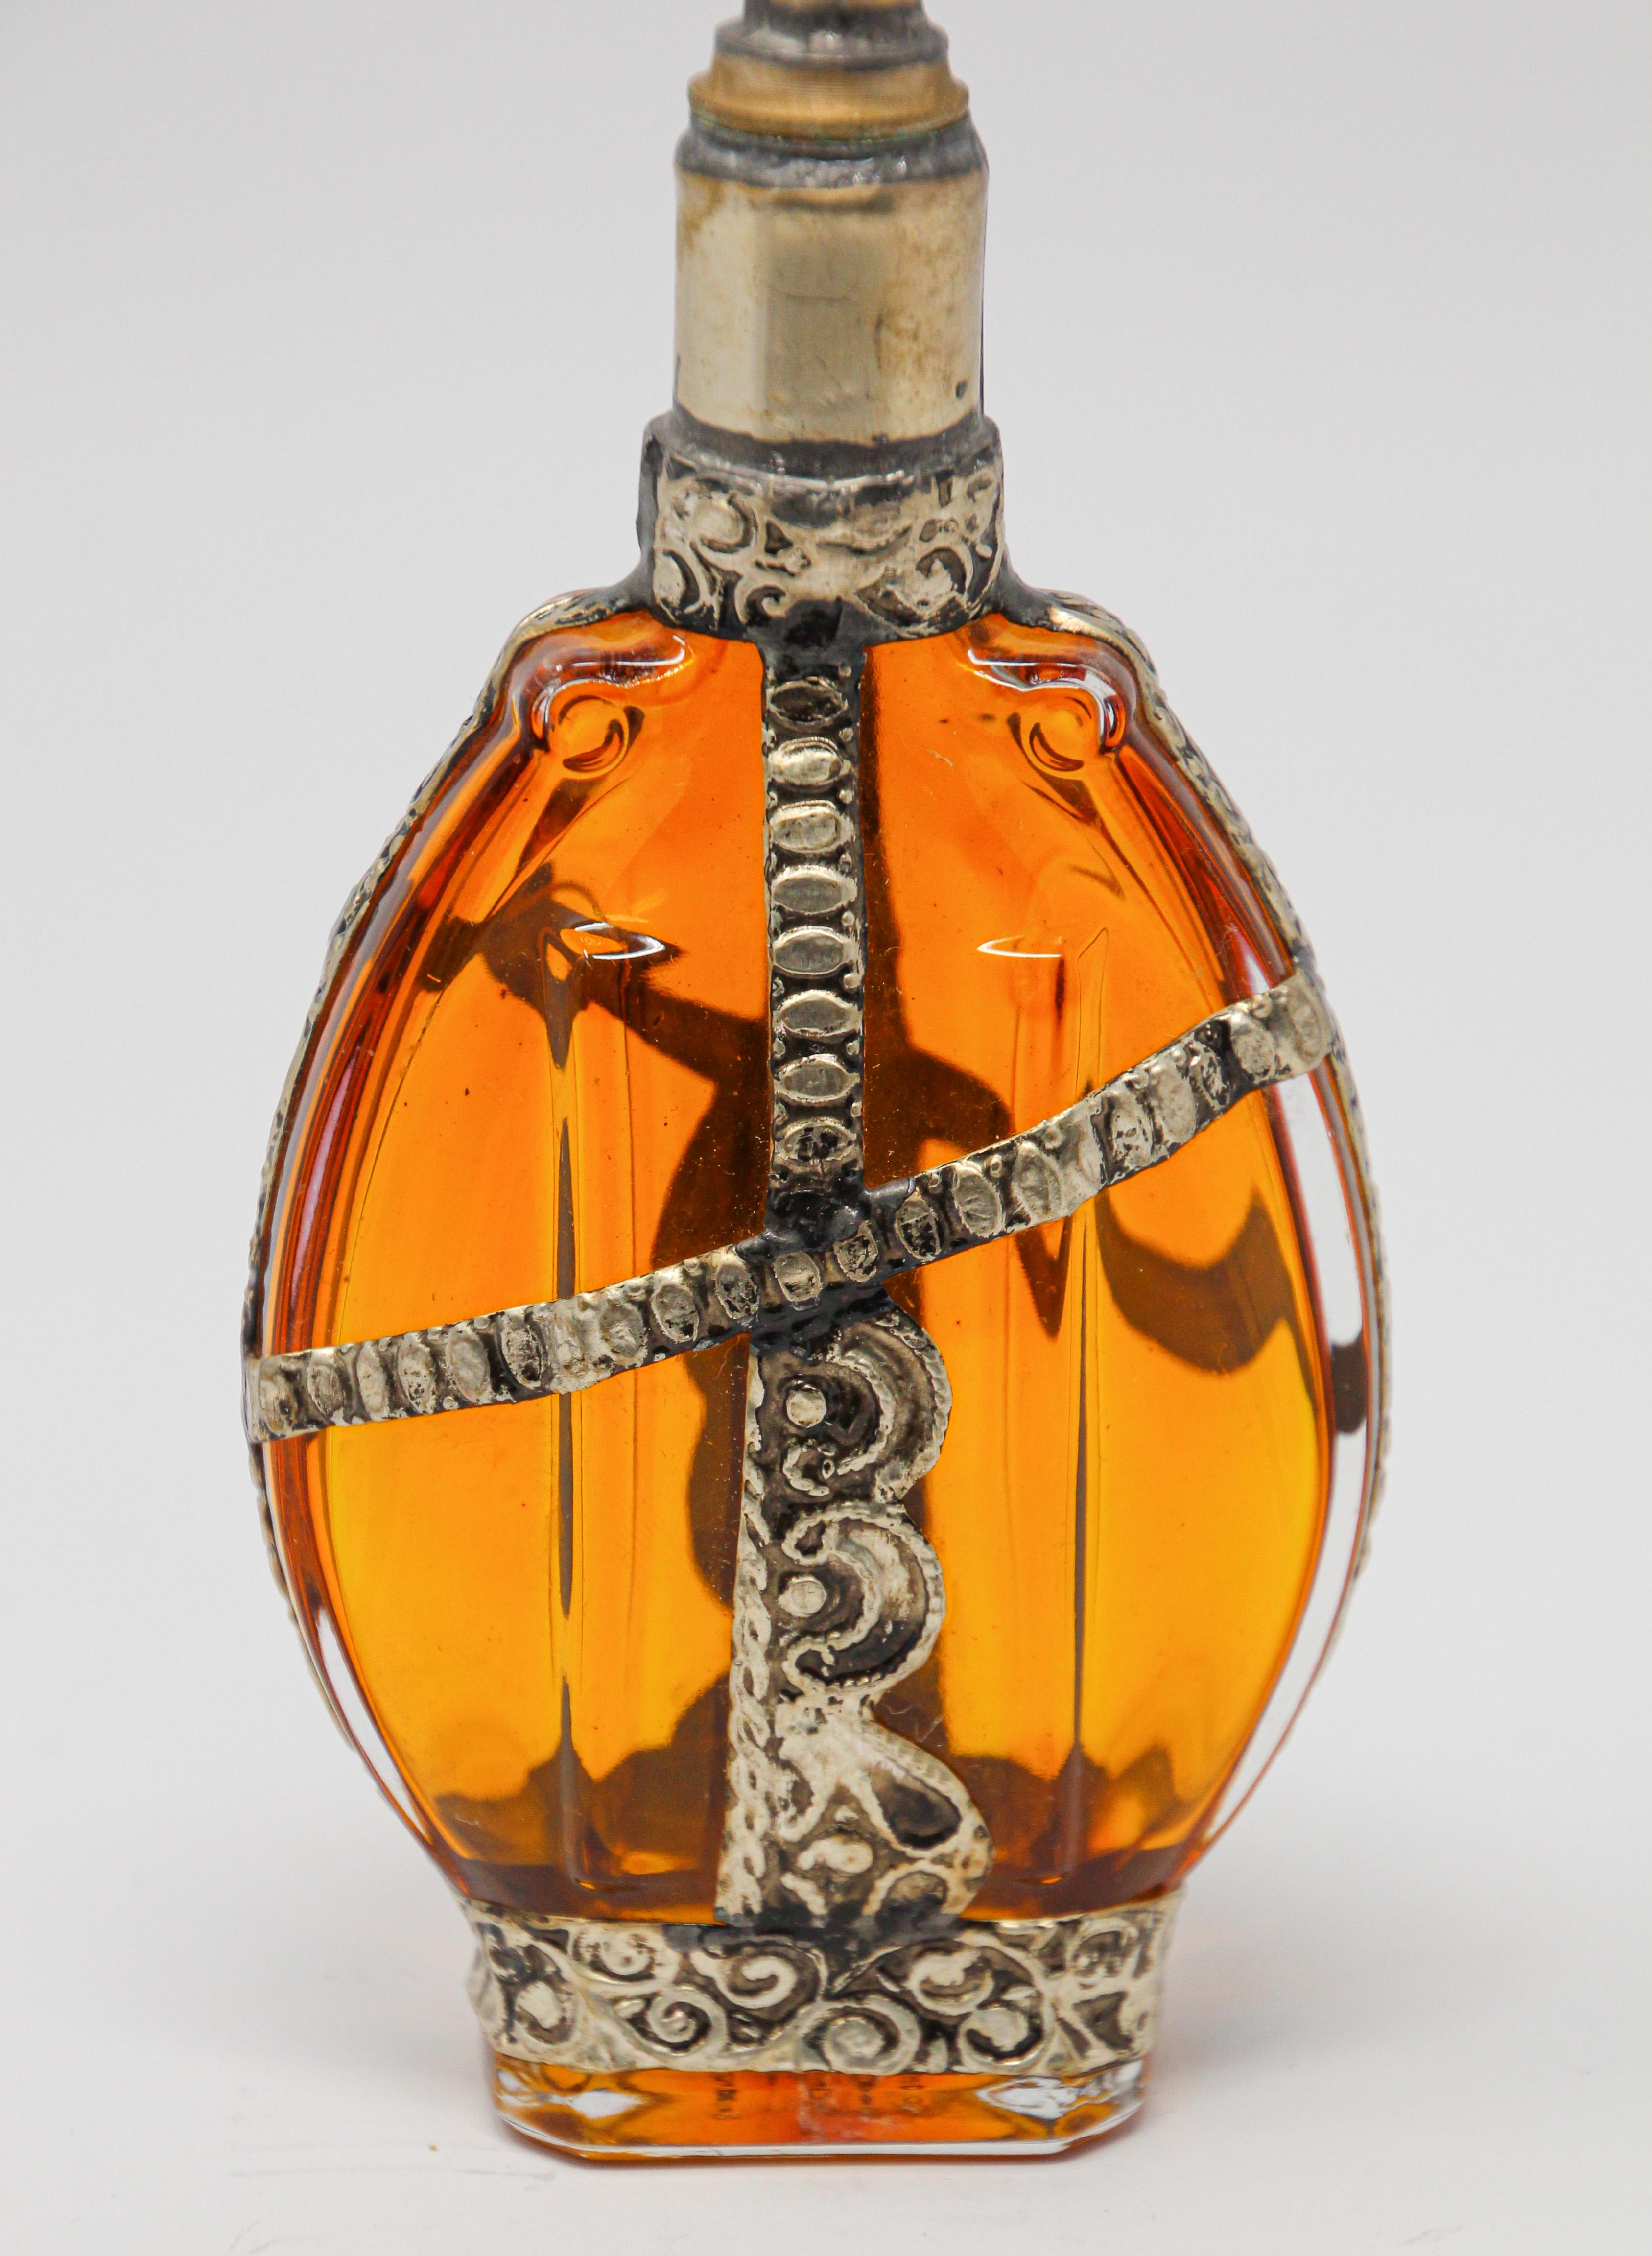 Handgefertigter marokkanischer Parfümflakon aus bernsteinfarbenem Glas oder Rosenwasserzerstäuber mit erhabenem, versilbertem Blumendesign aus Metall über bernsteinfarbenem Glas.
Der Pressglasflakon im Art Déco- und Jugendstil hat eine ovale Form